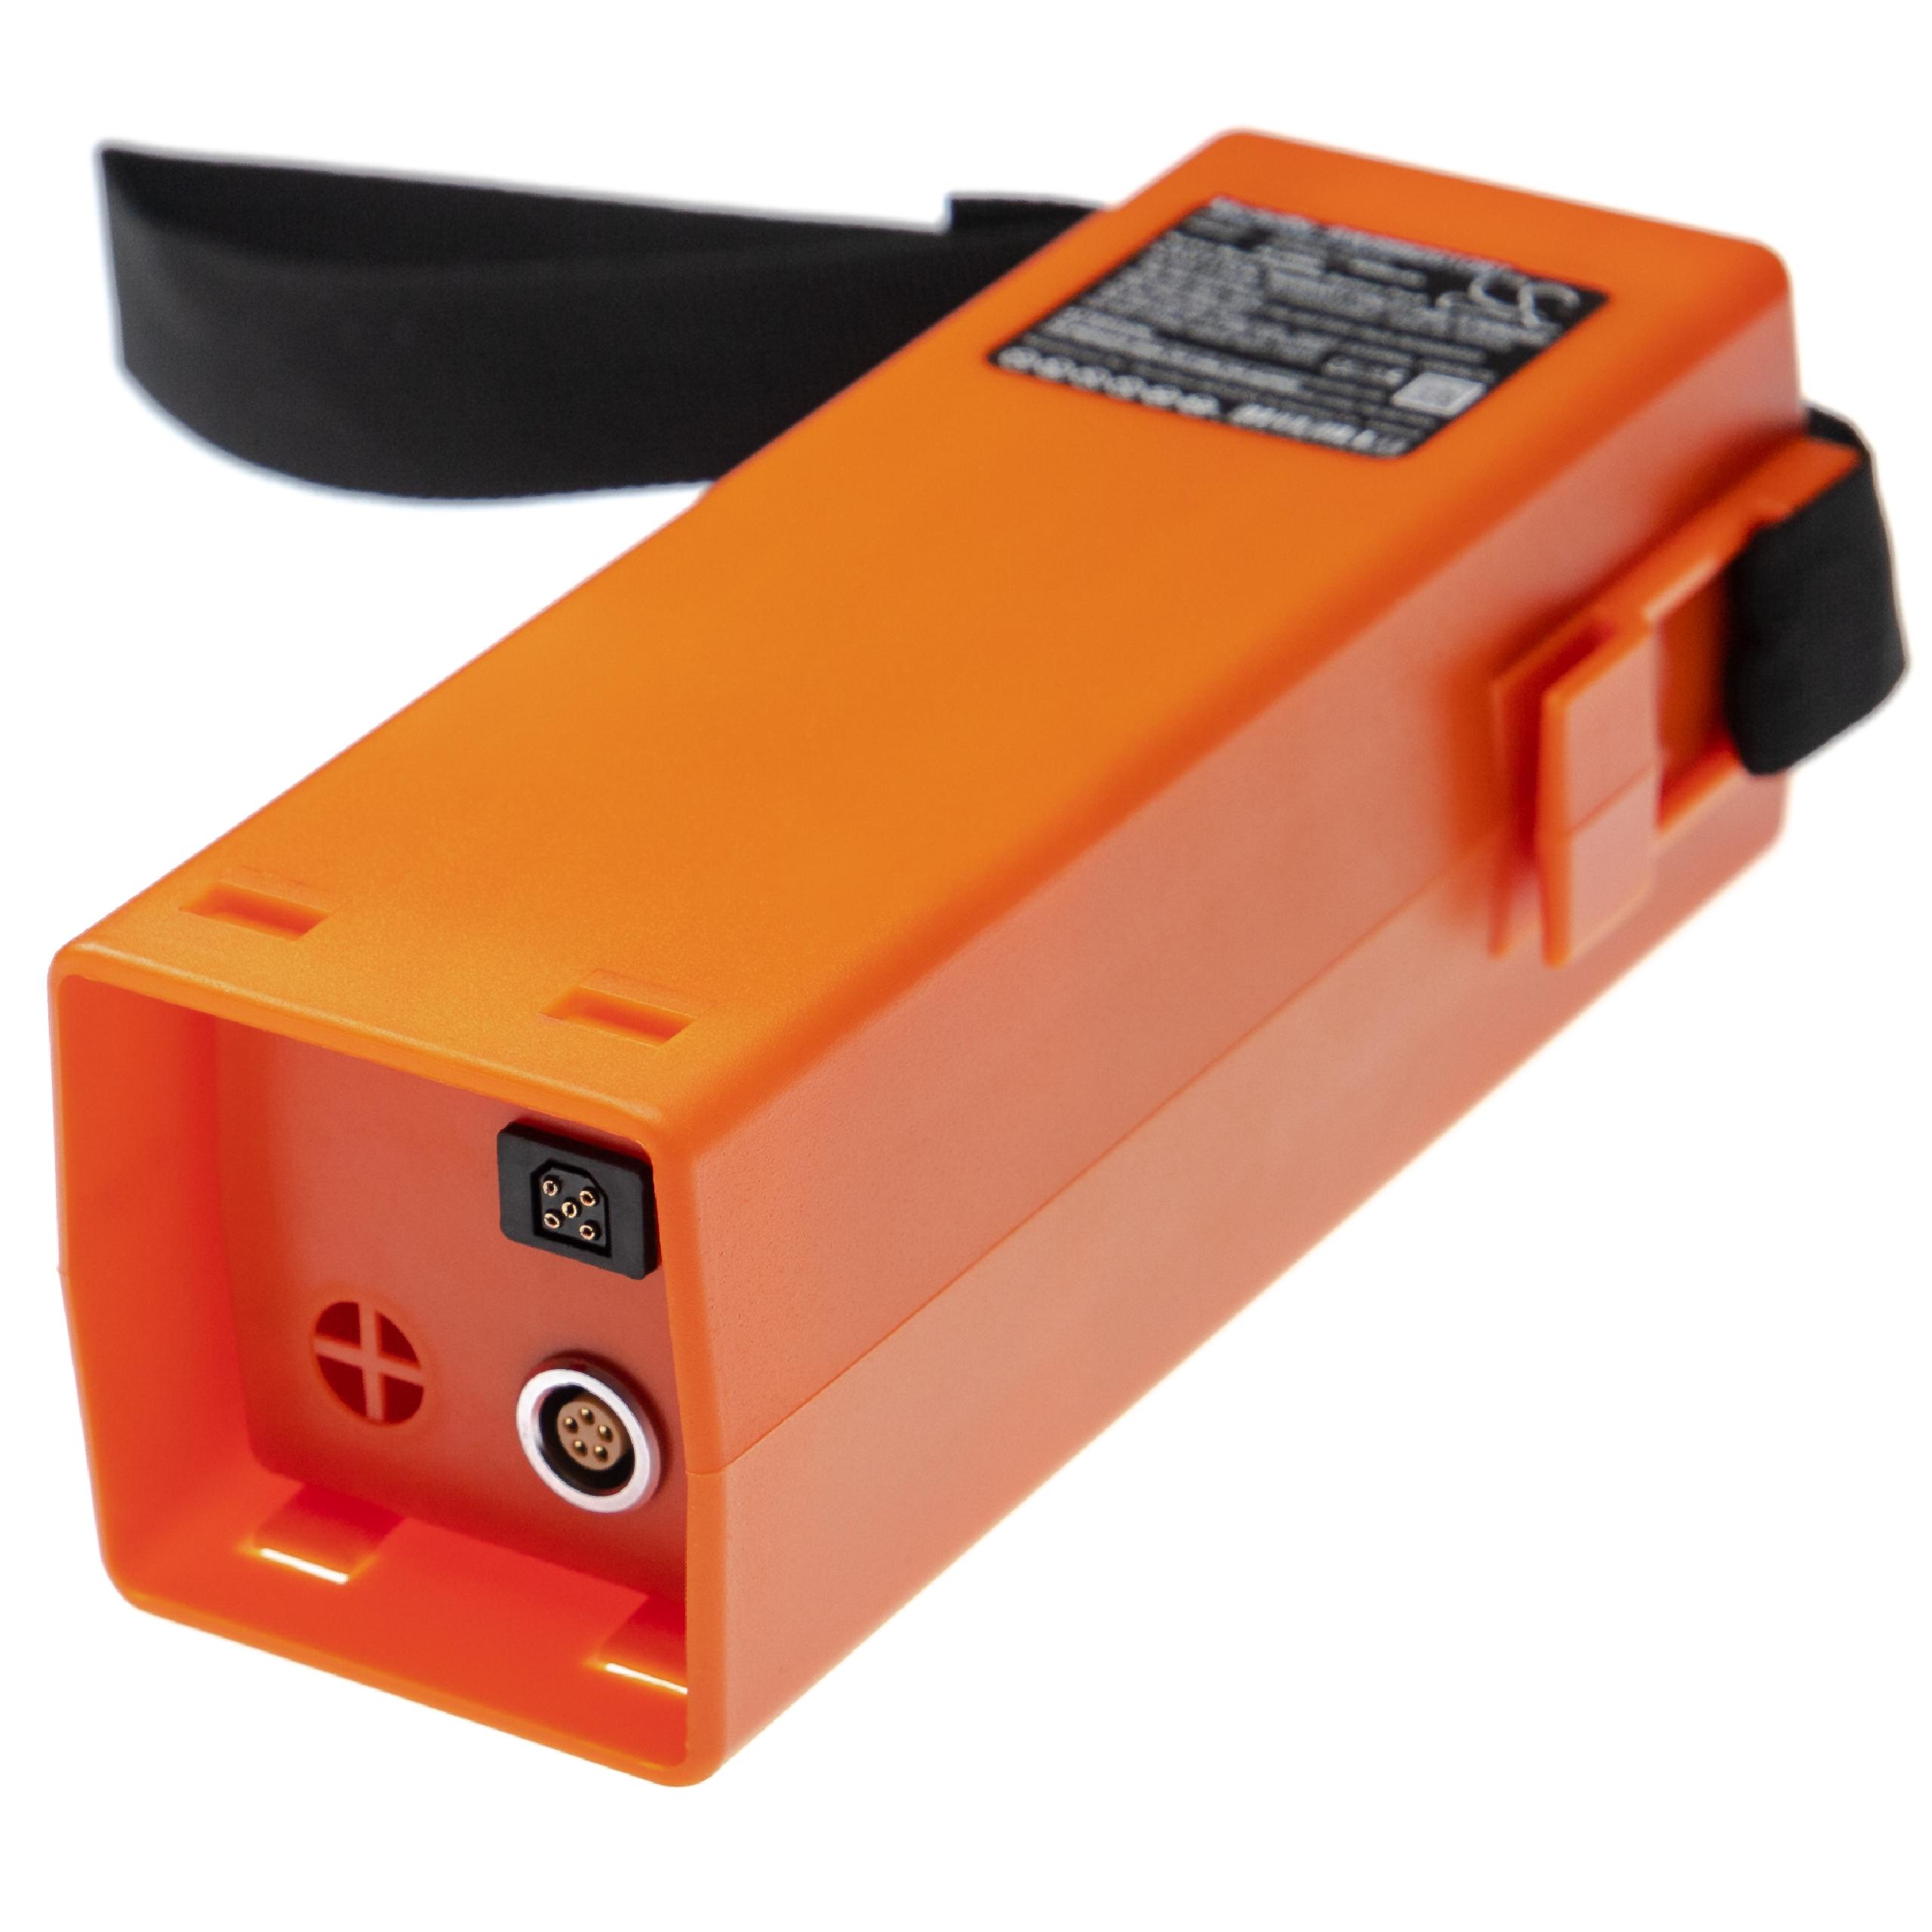 Akumulator do przyrządu pomiarowego zamiennik Leica 402210, GEB70 - 4000 mAh 12 V NiMH